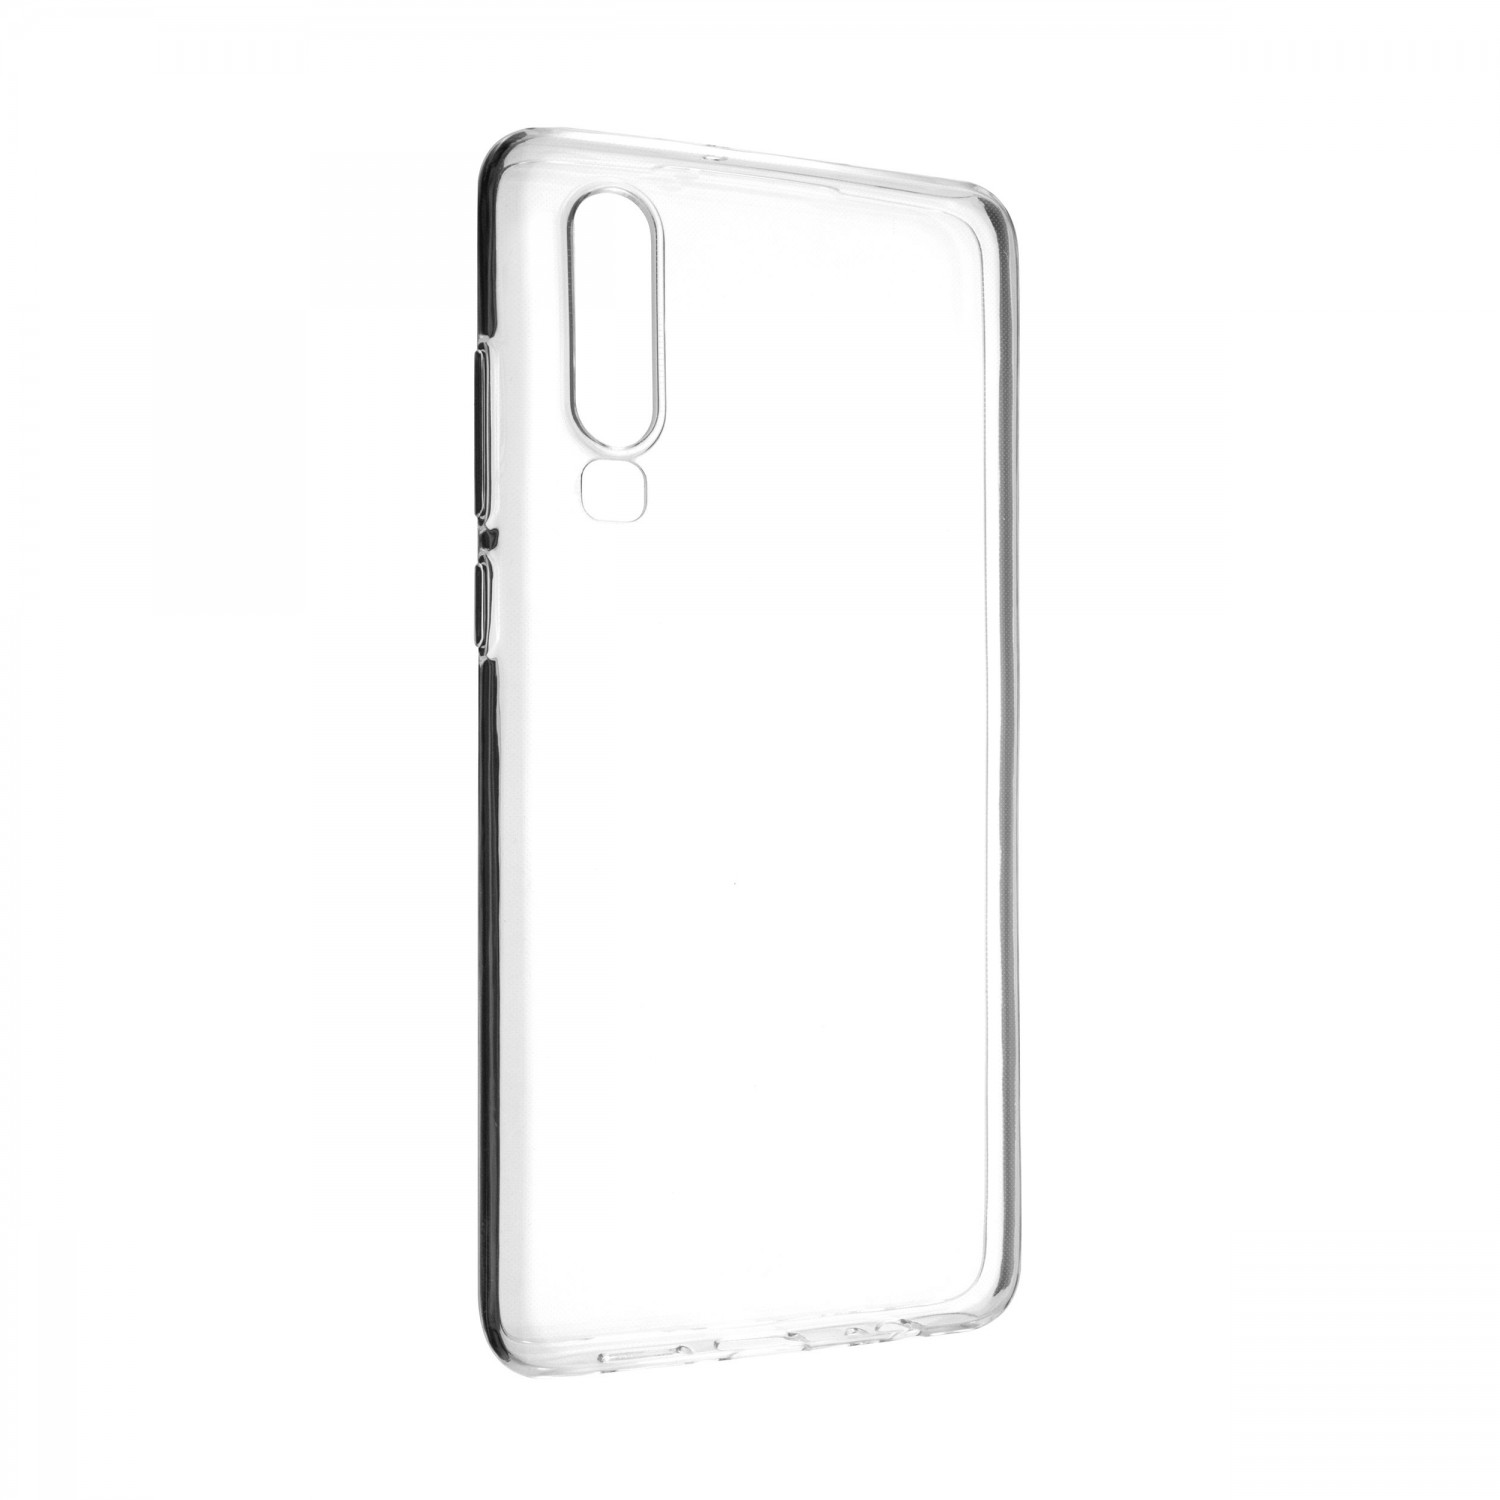 Ultratenké silikonové pouzdro FIXED Skin pro Huawei P30, transparentní